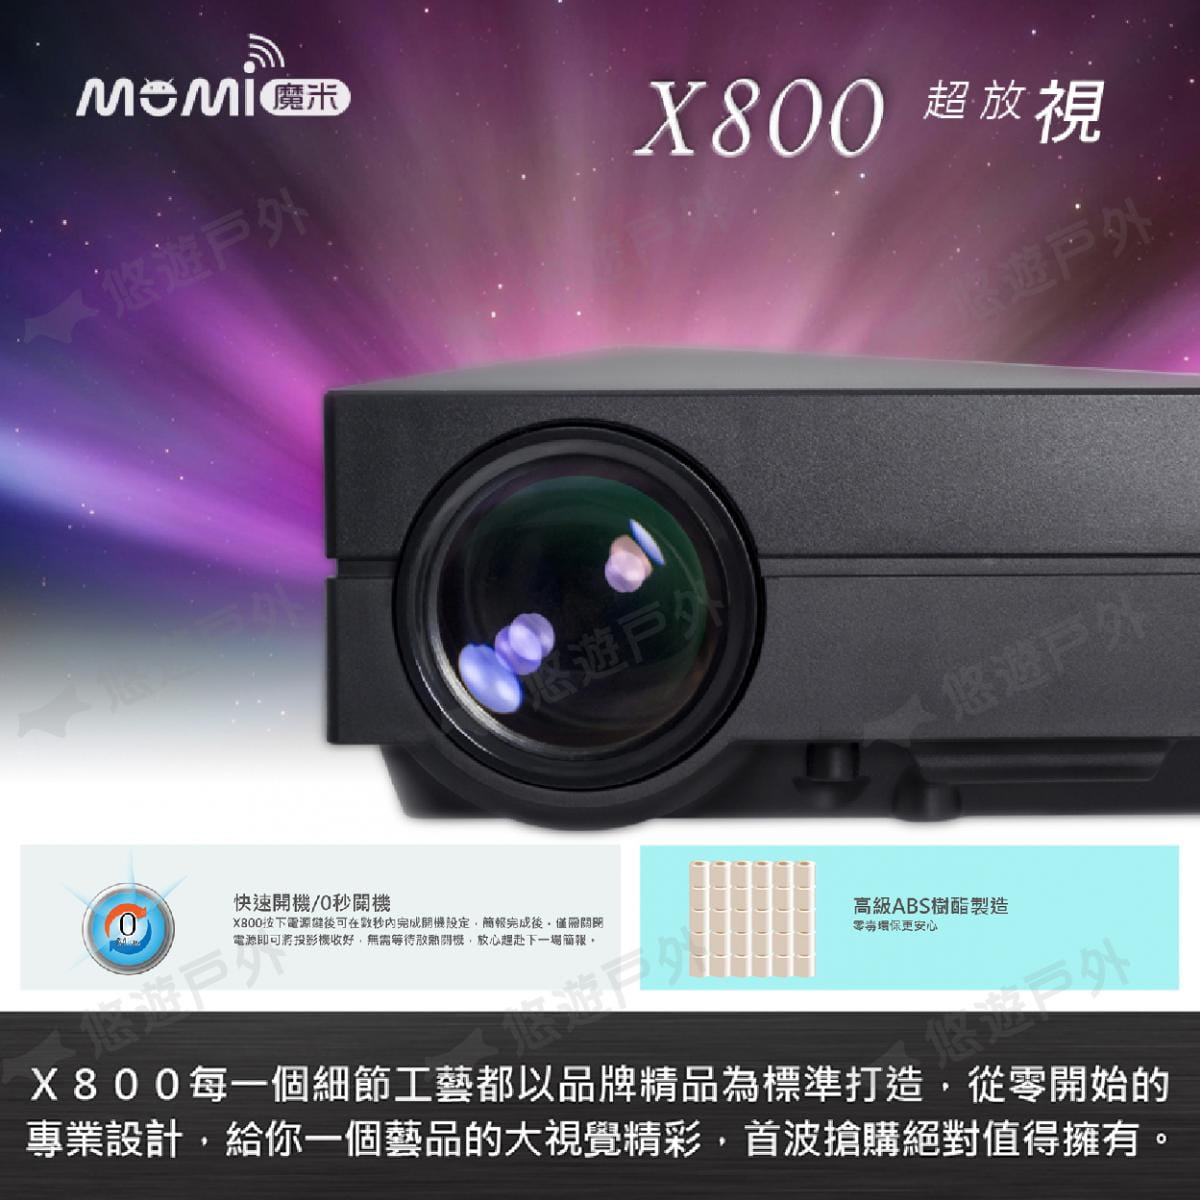 【MOMI魔米】X800微型投影機 +50吋布幕+收納包 (悠遊戶外) 2